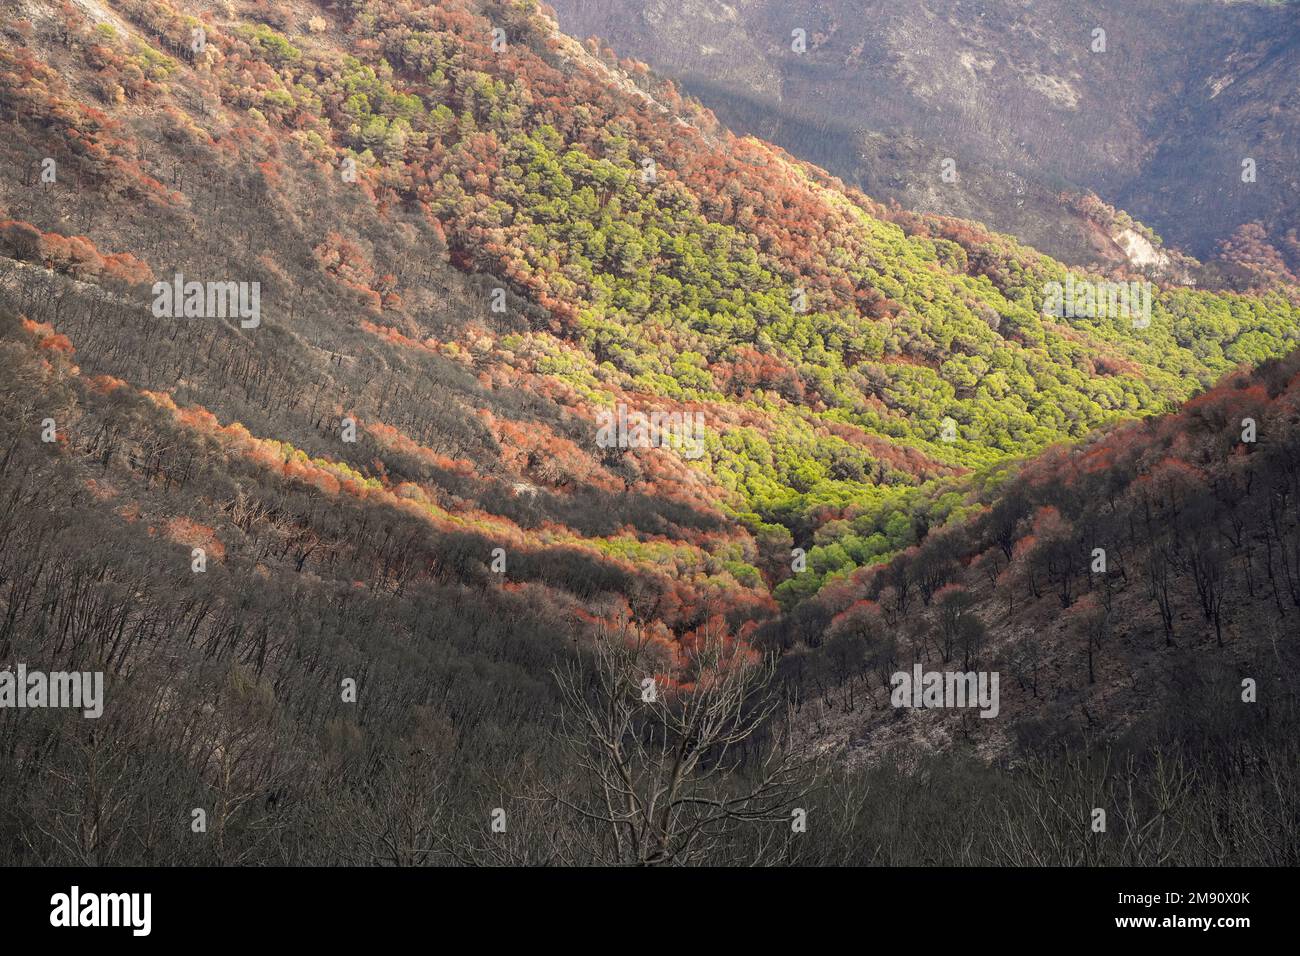 Montagne spagnole con pineta bruciata dopo il fuoco selvatico, Mijas, Malaga, Andalusia, Spagna Foto Stock